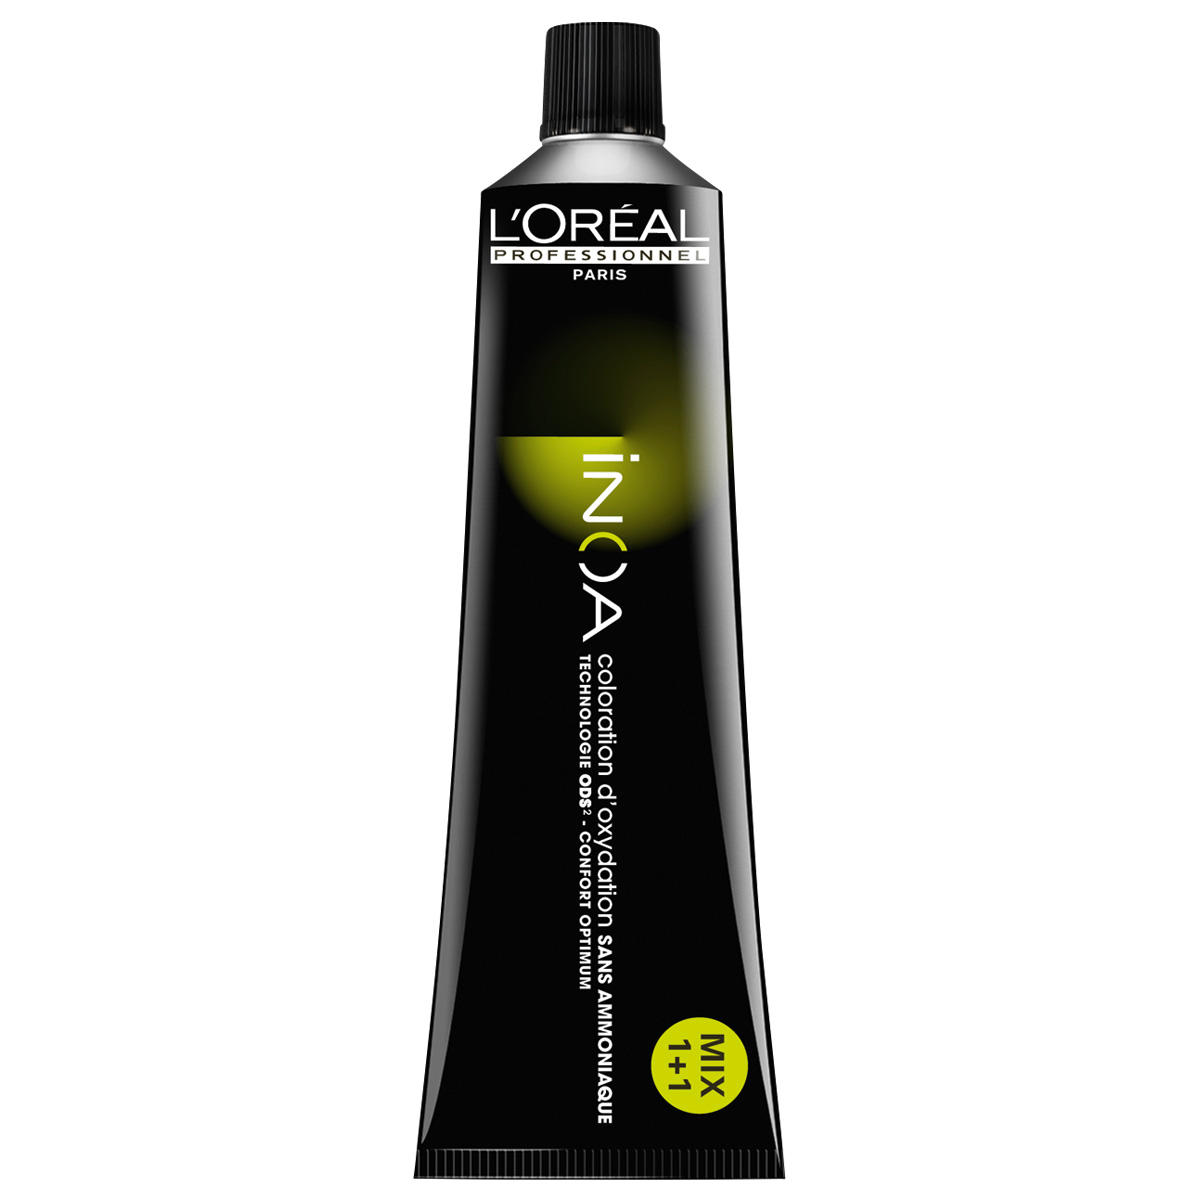 L'Oréal Professionnel Paris Coloration 4.0 Medium Brown Intensive, tubo 60 ml - 1